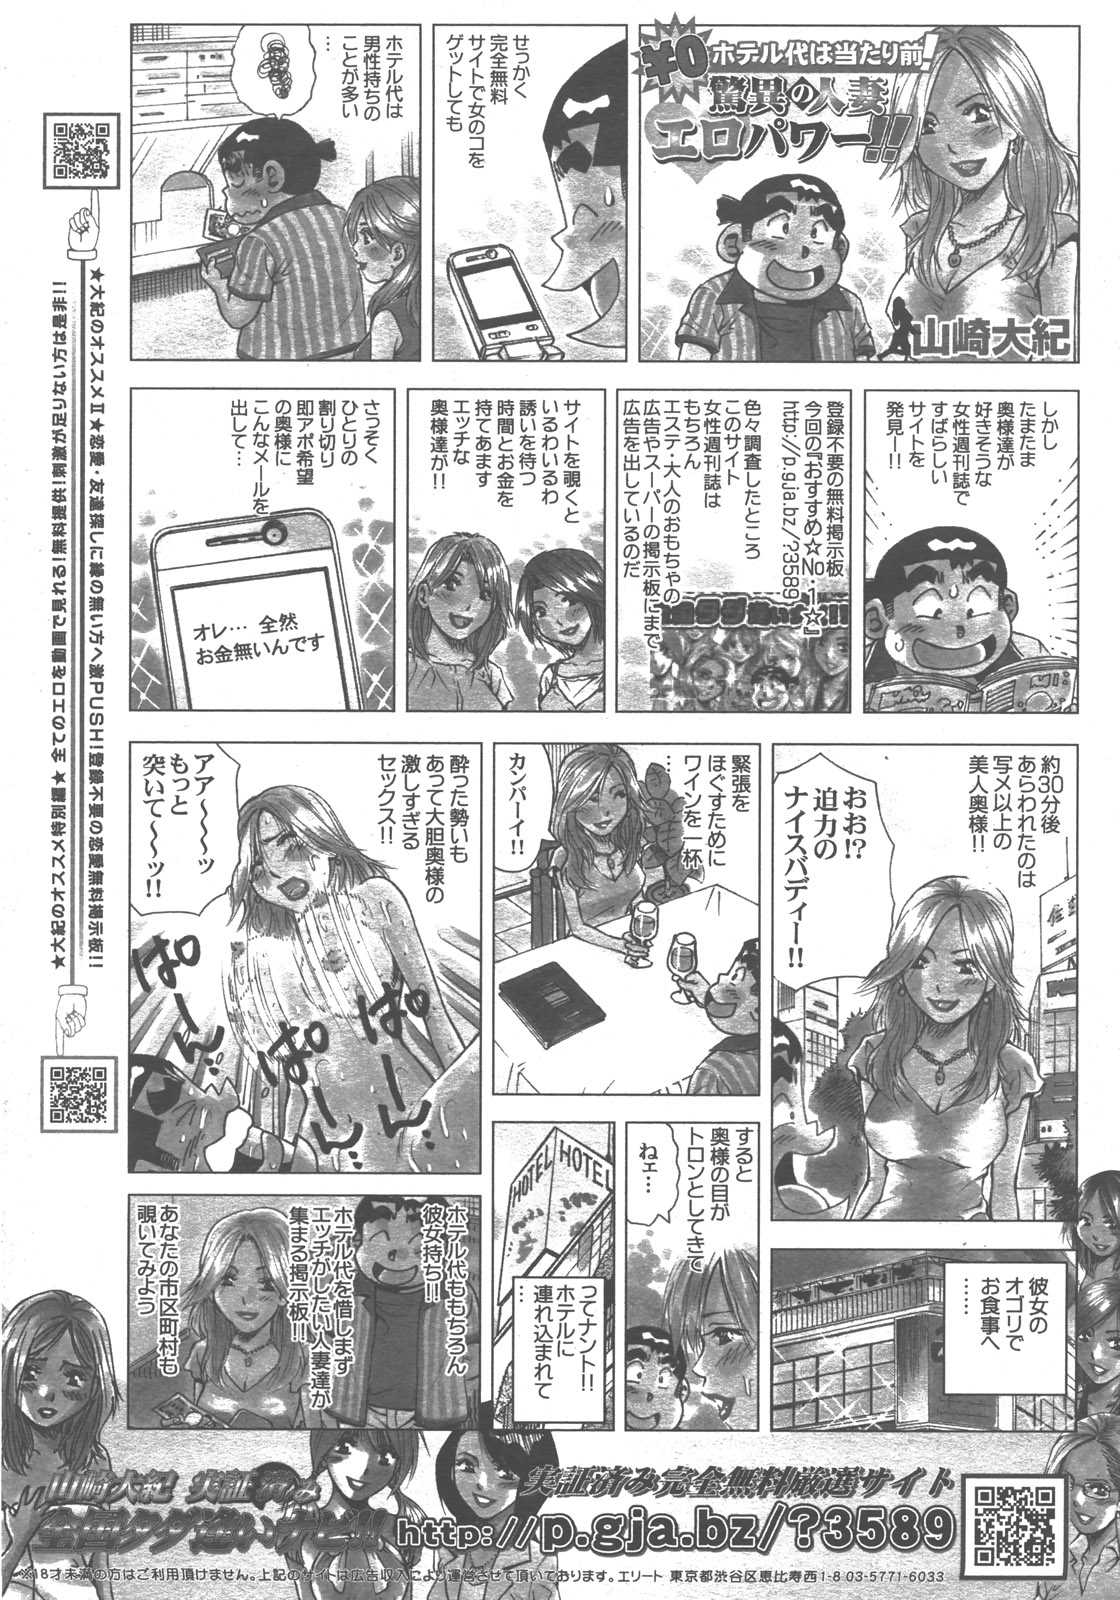 COMIC AUN 2007-12 Vol. 139 COMIC 阿吽 2007年12月号 VOL.139